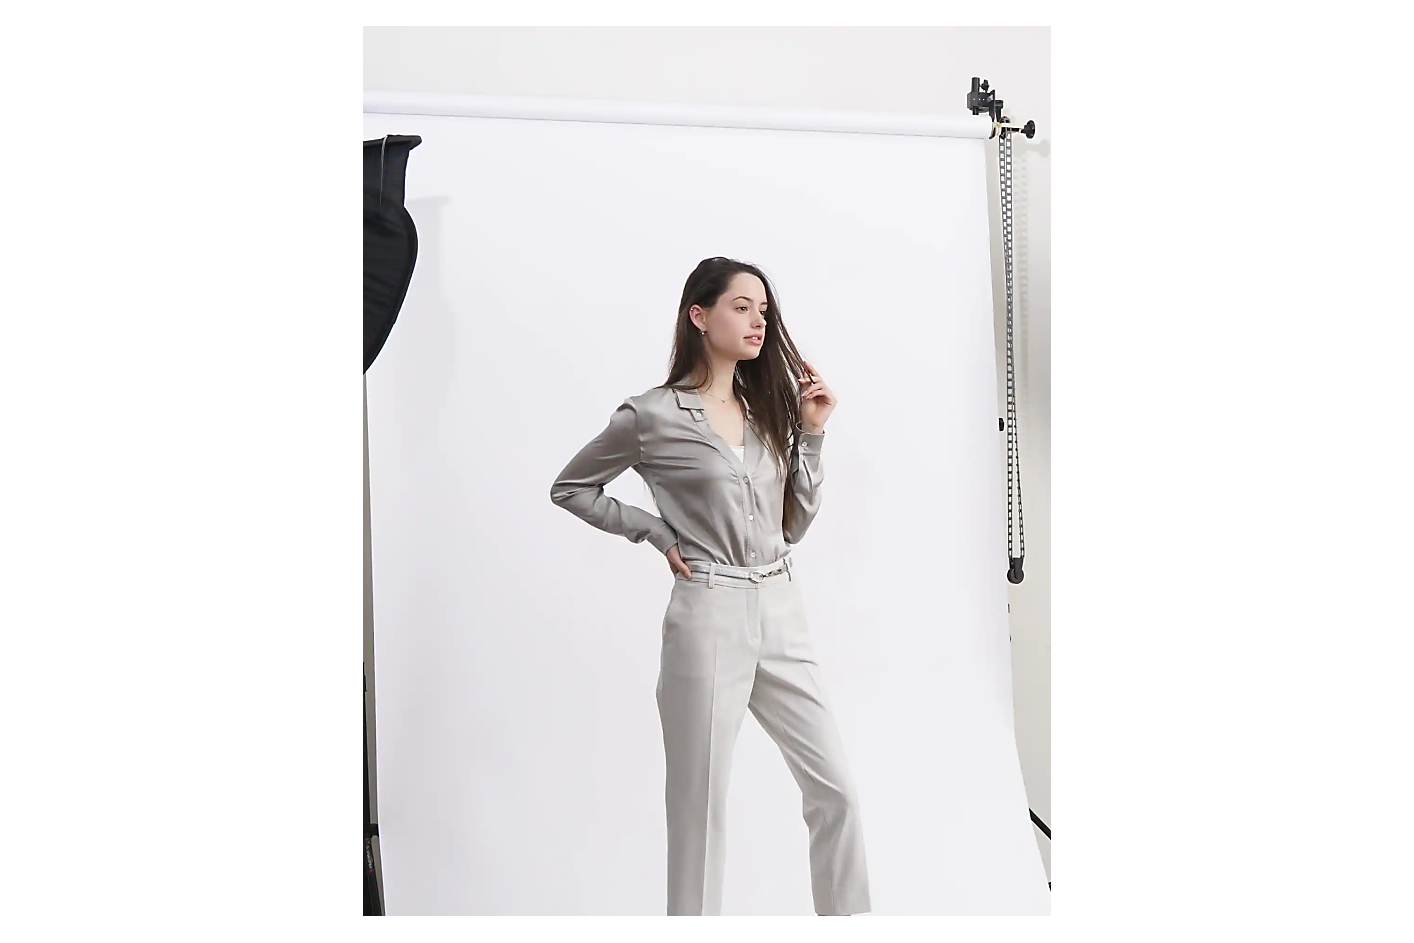 Una mujer con ropa gris clara posa frente a un fondo blanco en un estudio fotográfico.